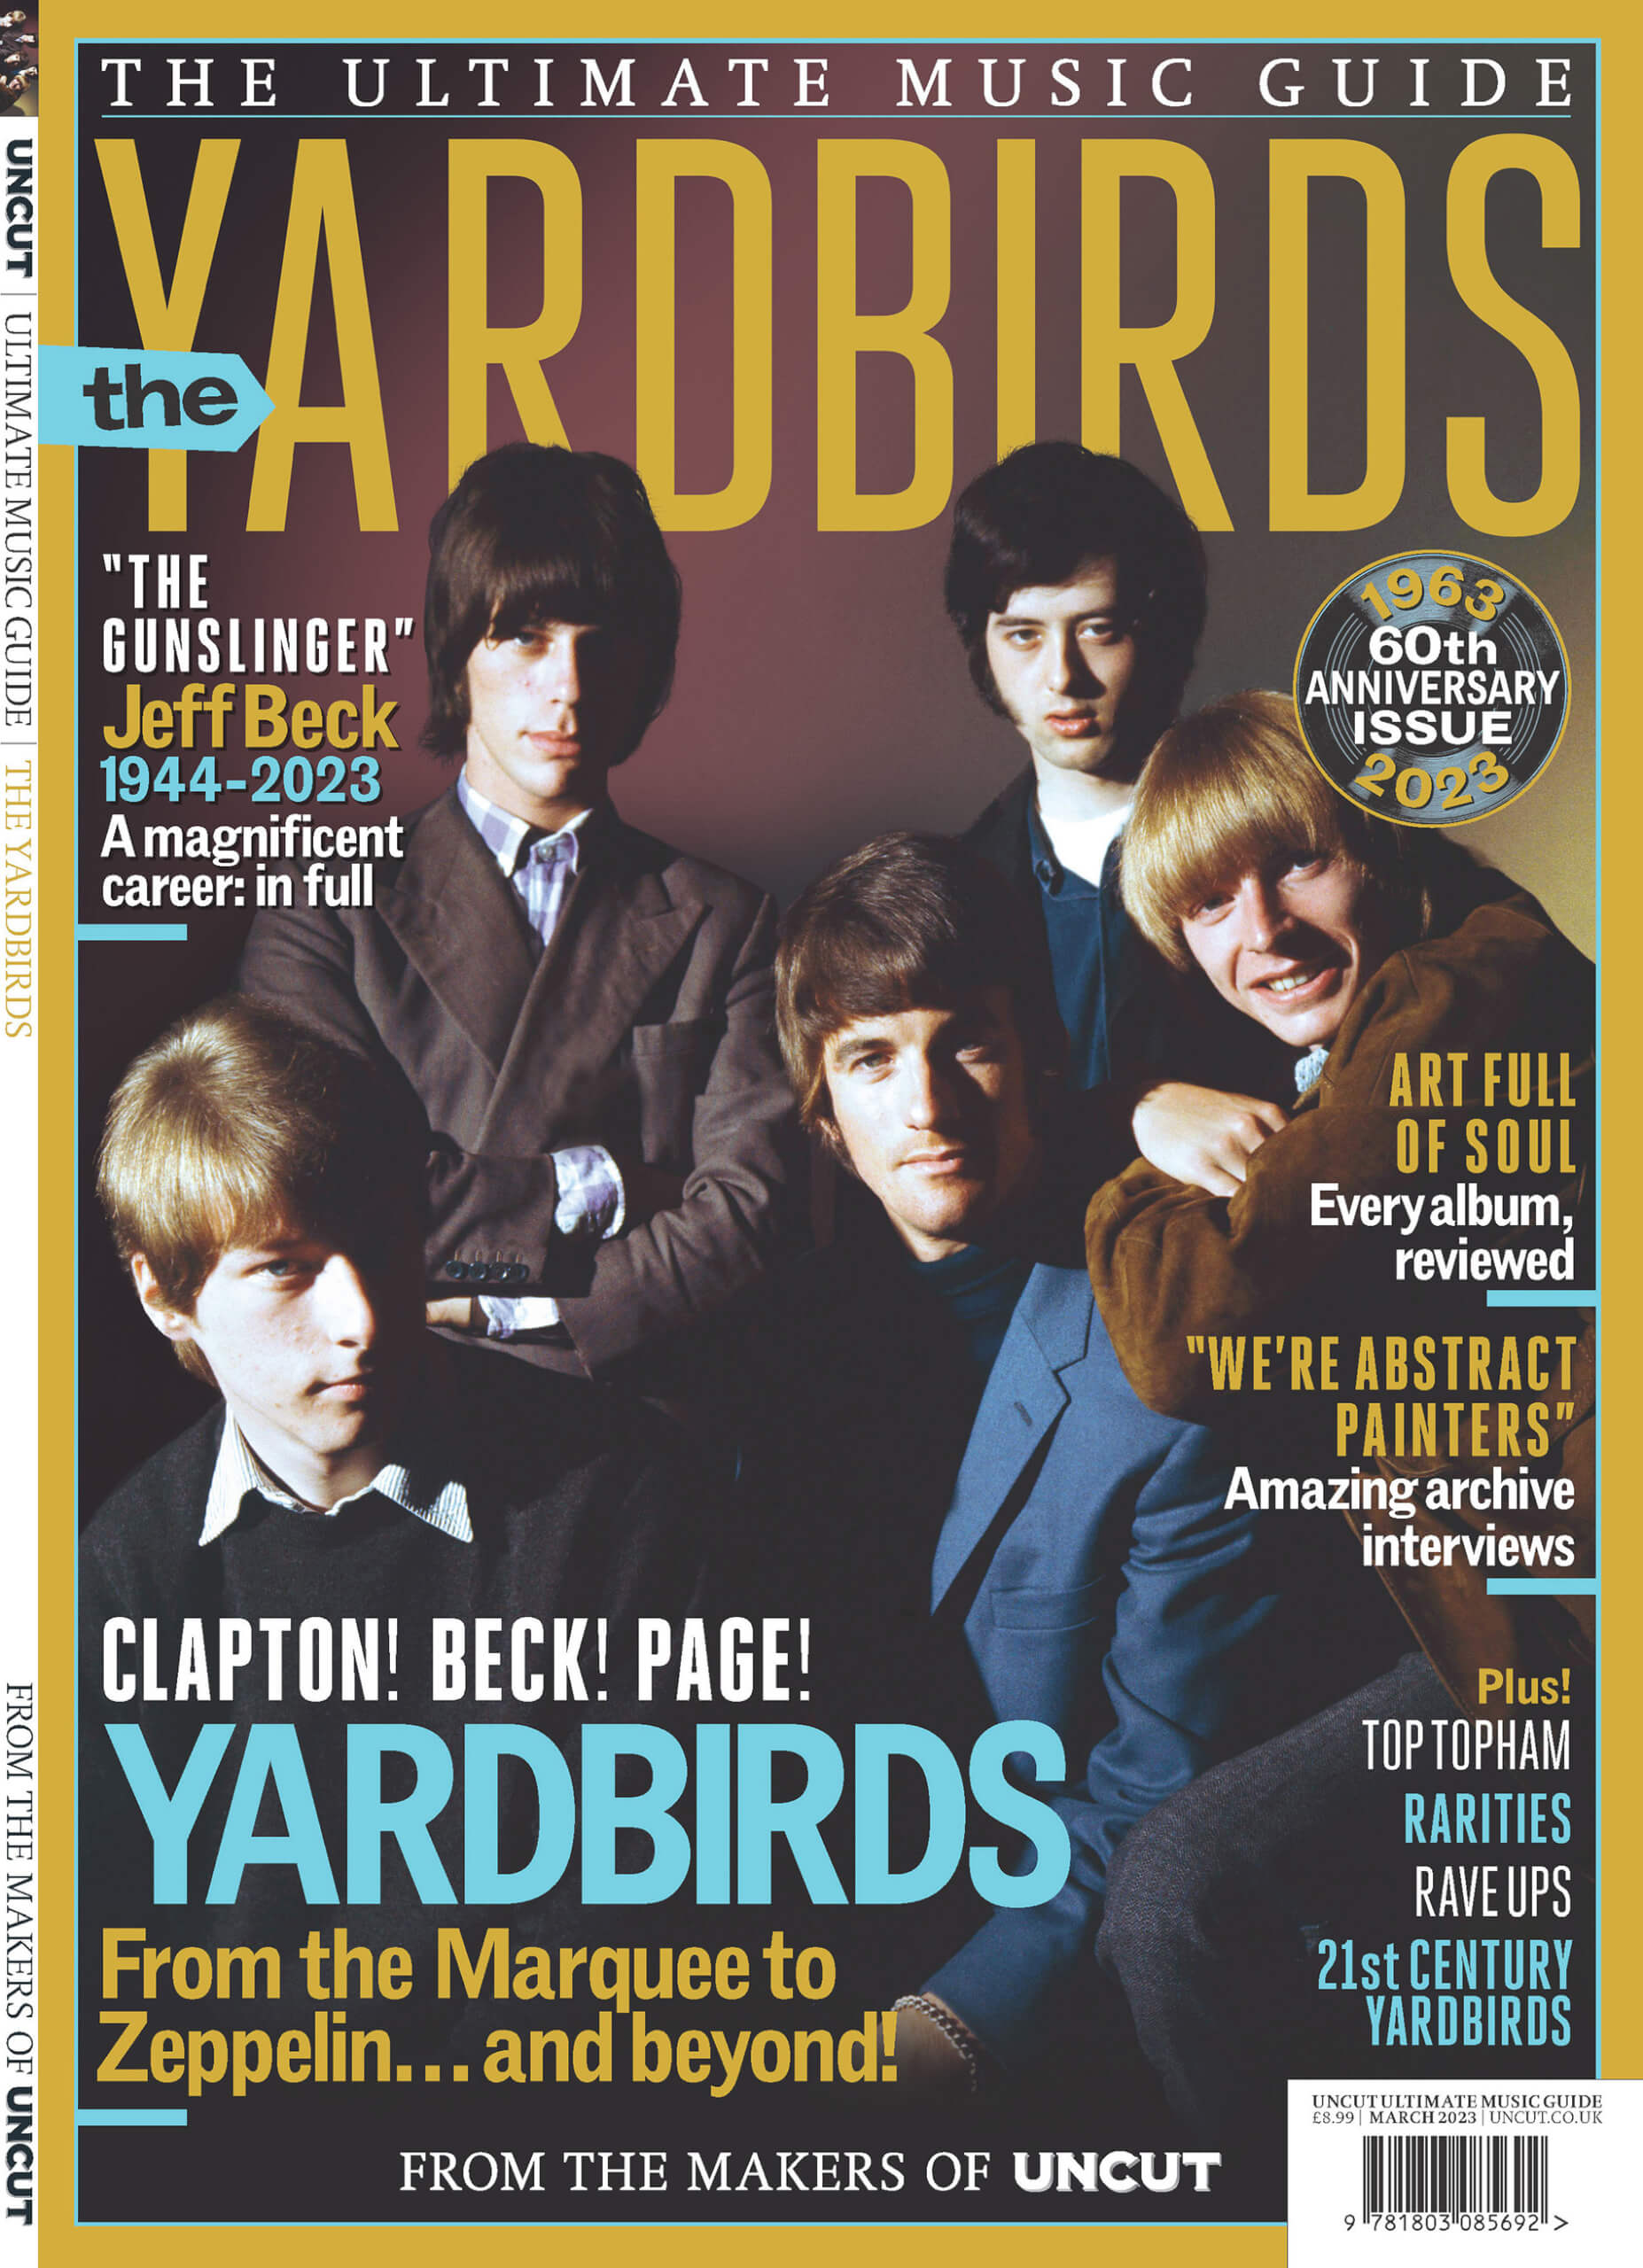 UMG Yardbirds Cover@1900x2623 